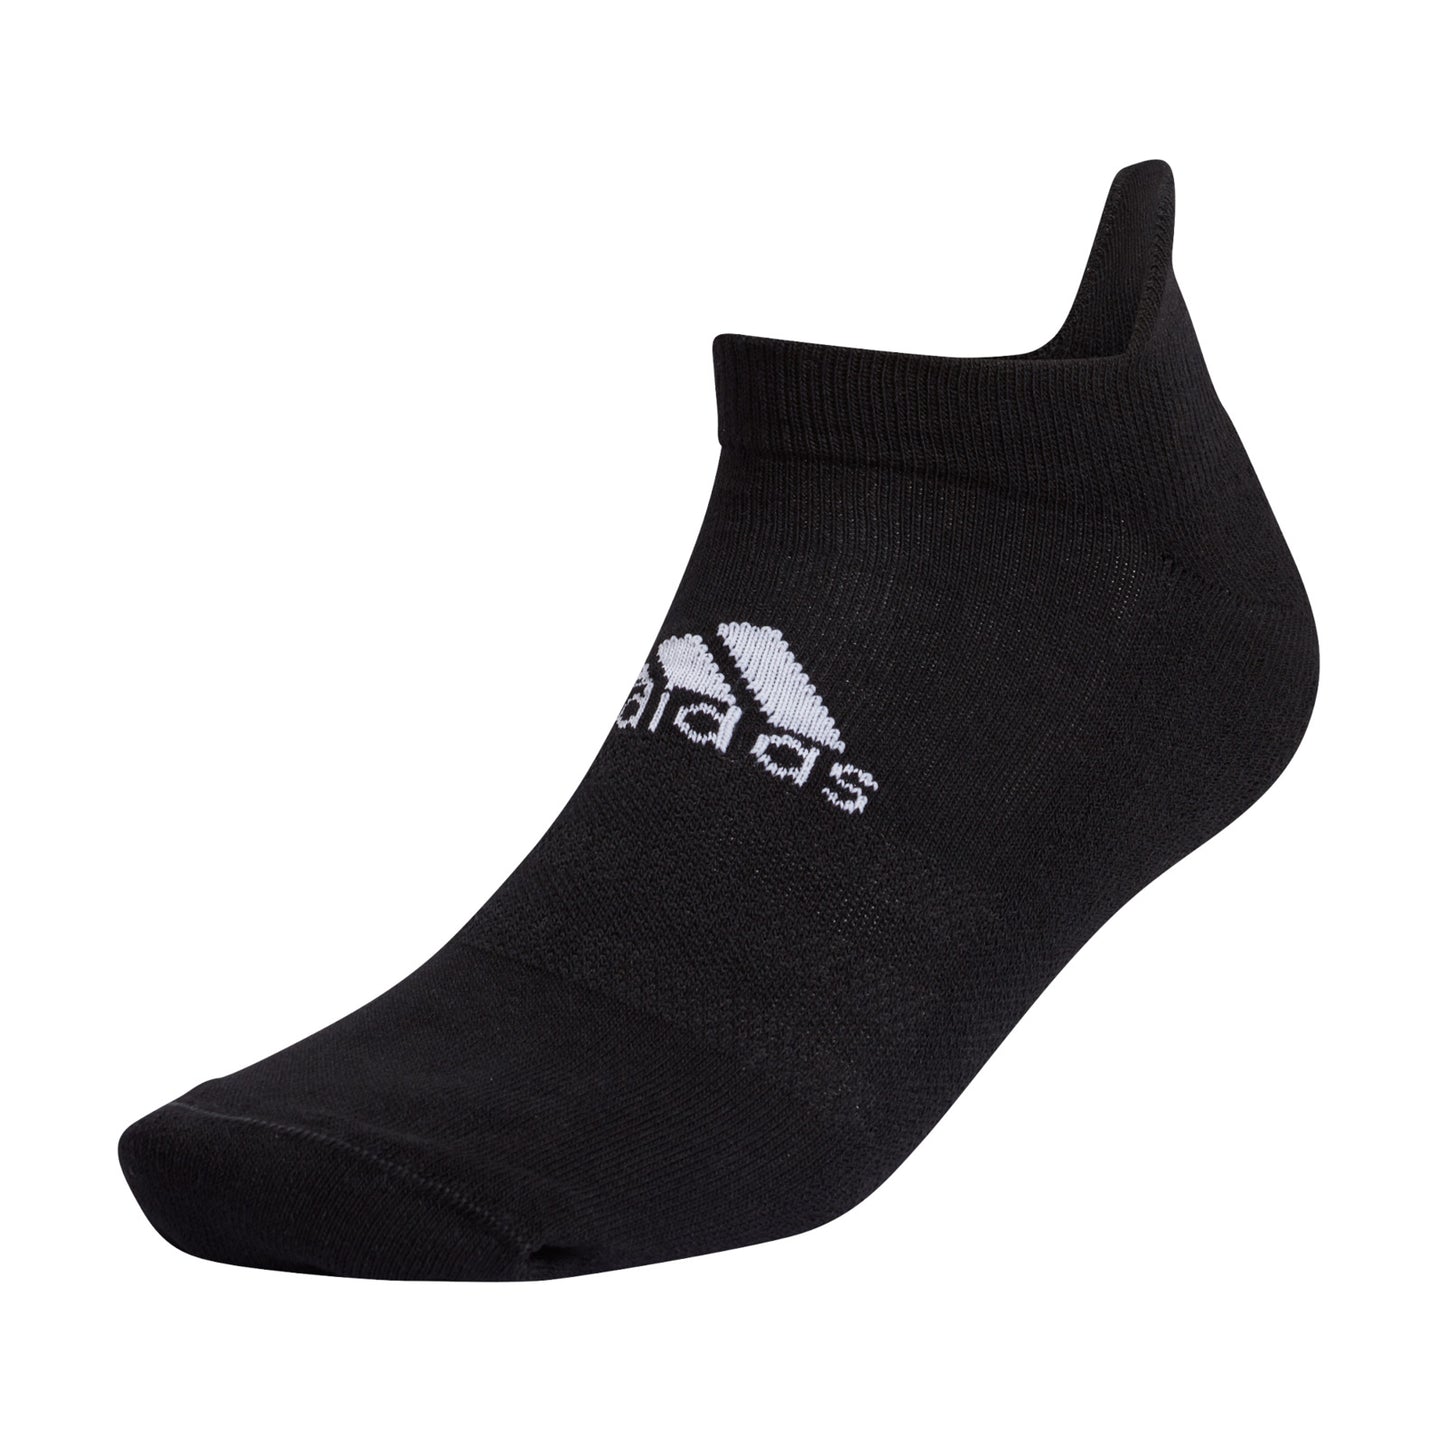 adidas Mens Ankle Socks